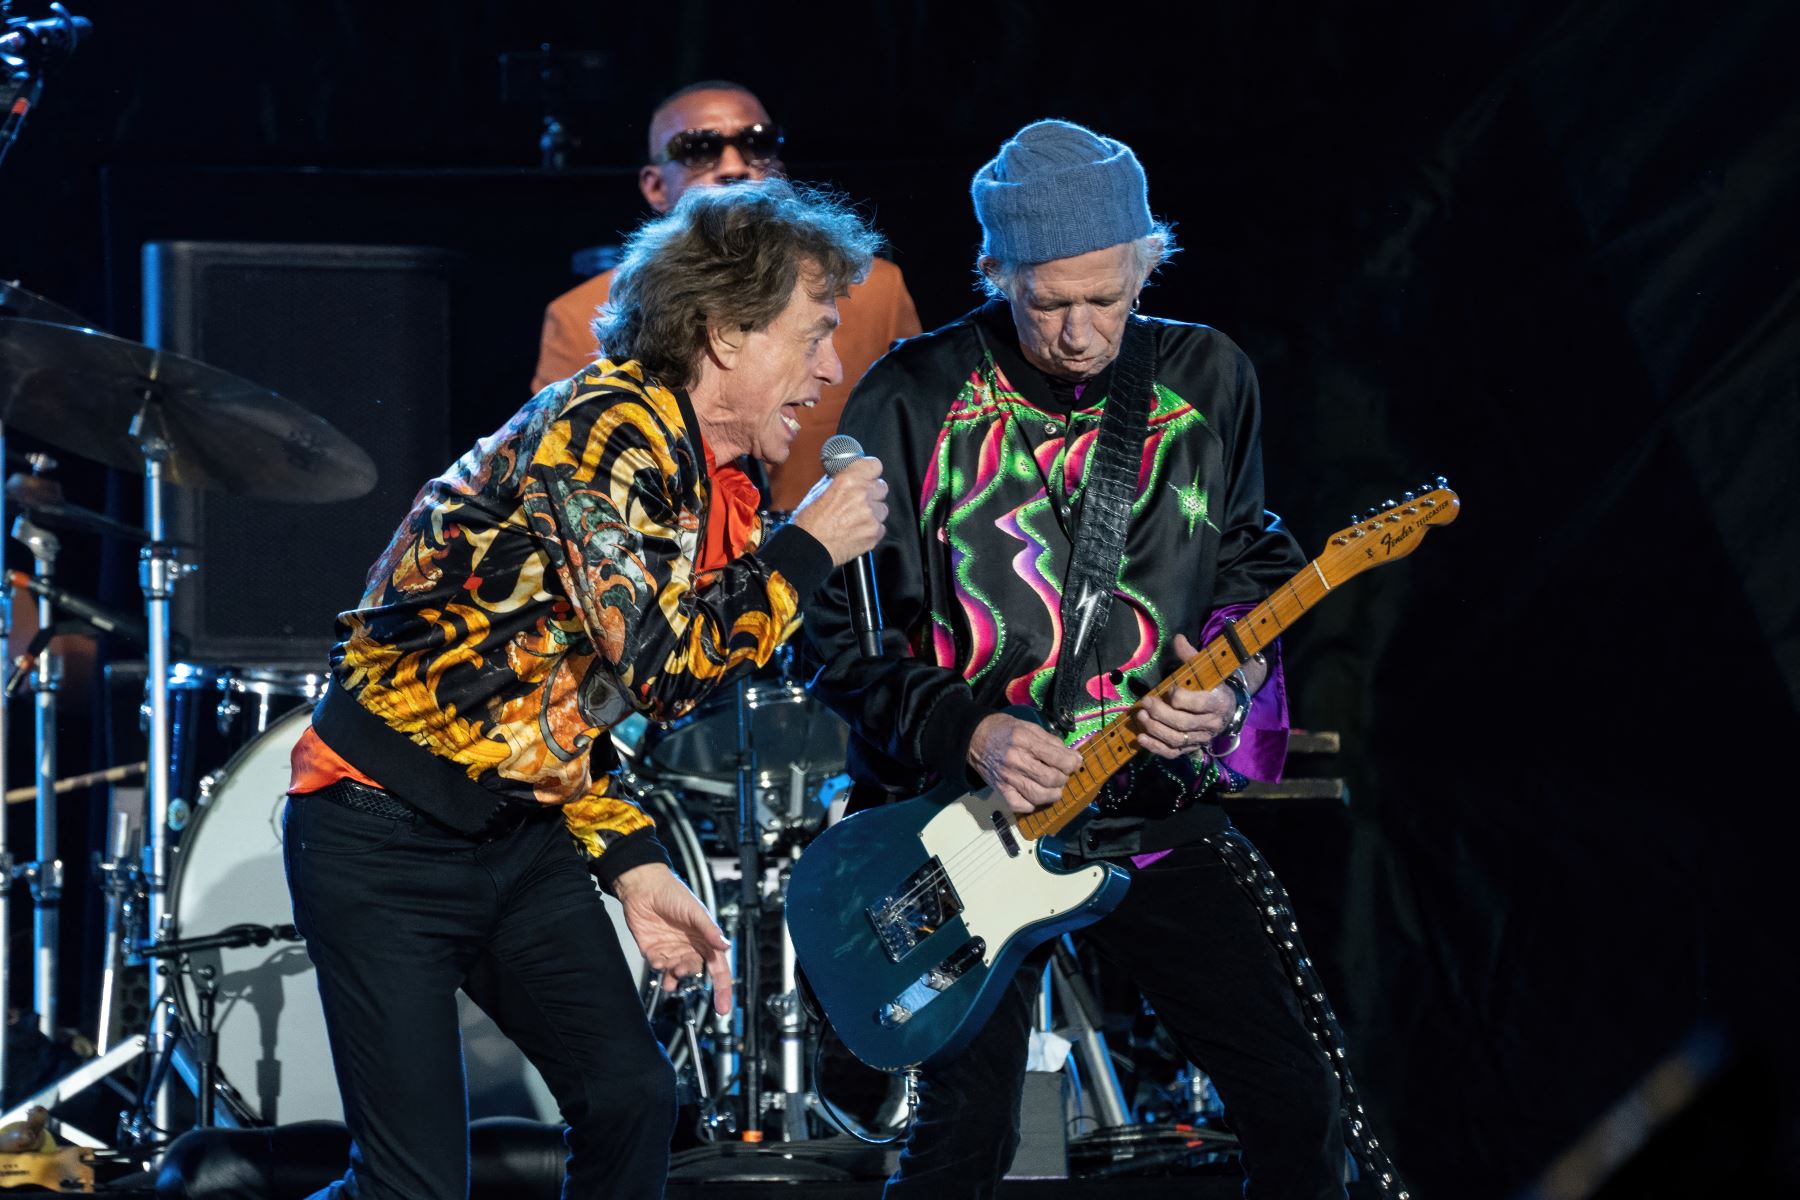 El cantante Mick Jagger (izquierda), el baterista Steve Jordan (atrás) y el guitarrista Keith Richards (derecha) de The Rolling Stones se presentan durante la gira "No Filter" en el Circuit of The Americas Super Stage el 20 de noviembre del 2021 en Austin, Texas. Foto: AFP